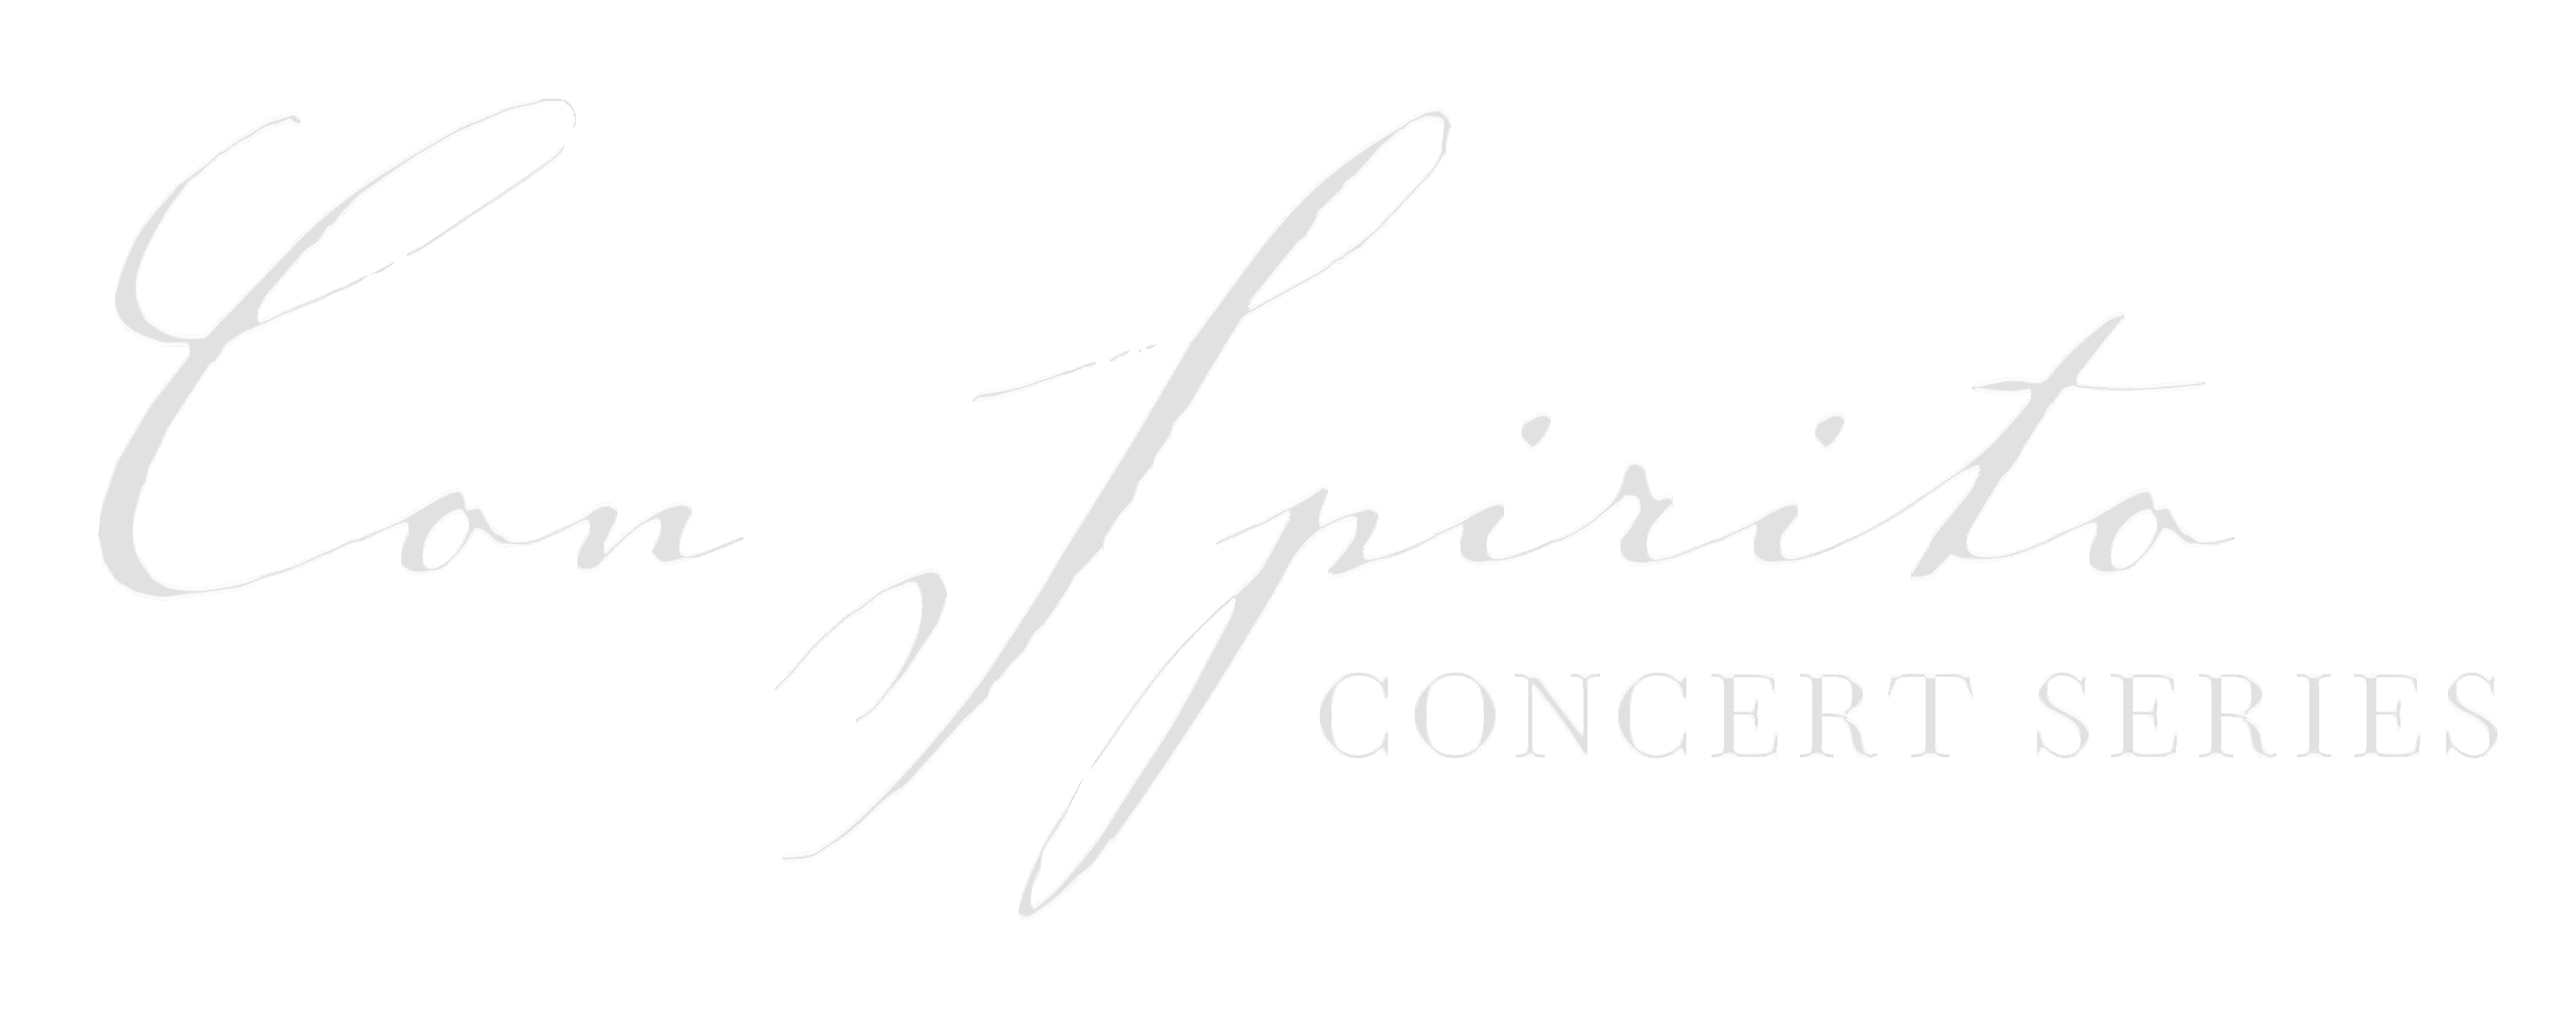 Con Spirito Concert Series